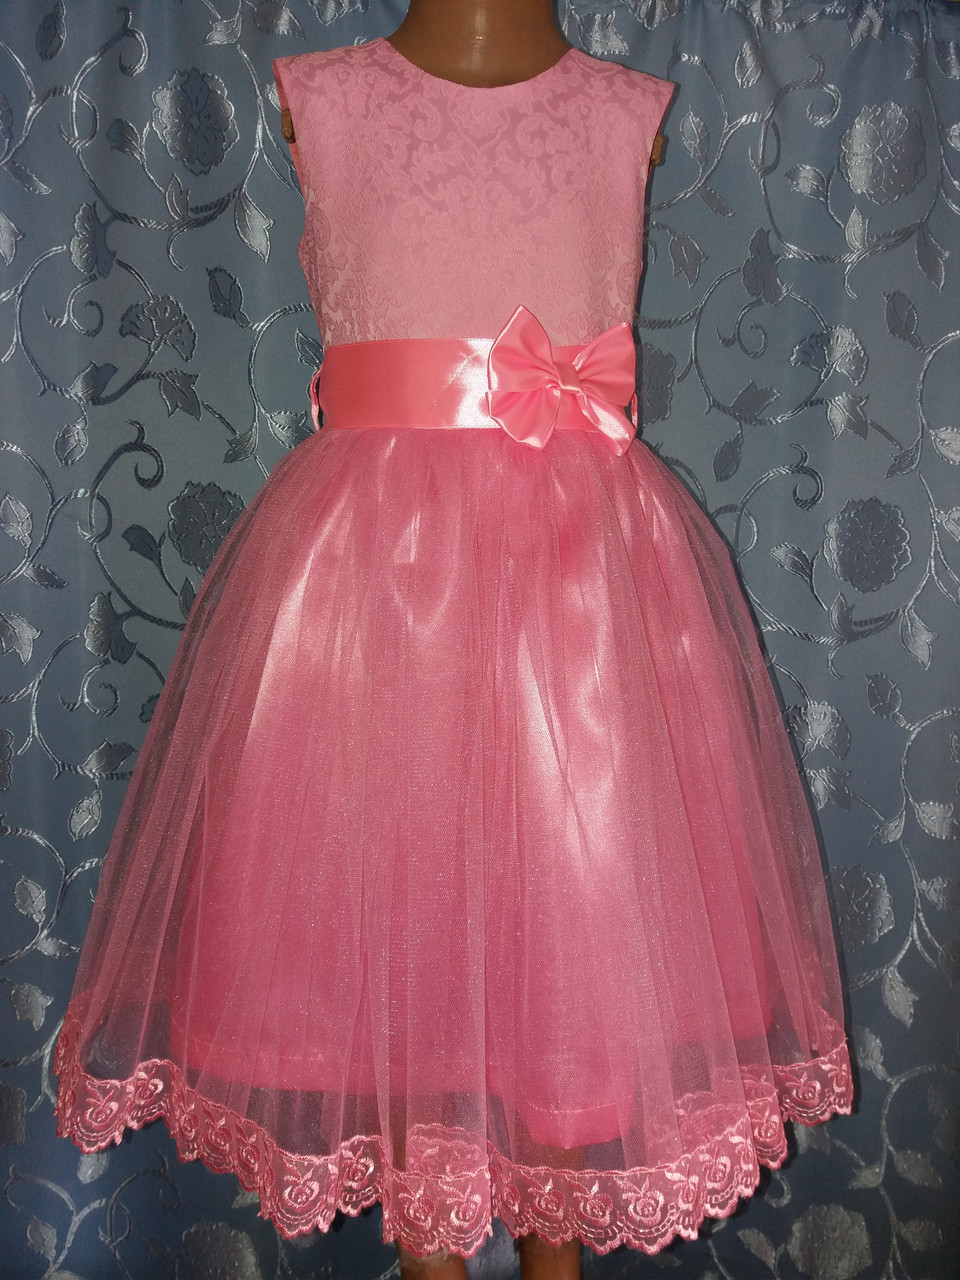 

Святкова дитяча сукня «Рожева ніжність» 116, Розовый